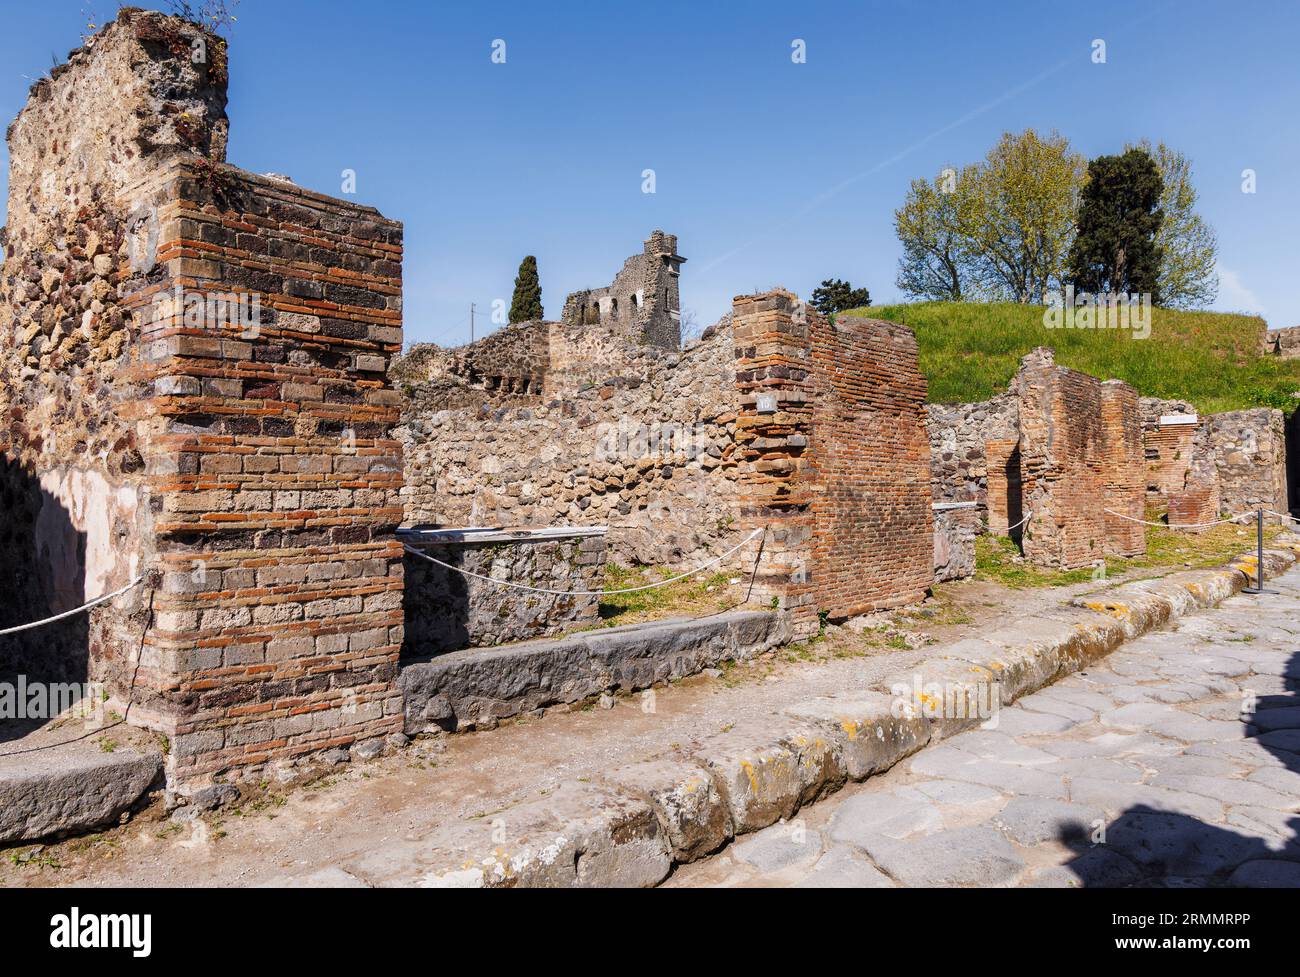 Archäologische Stätte Pompeji, Kampanien, Italien. Ausgegrabene Straßen. Pompeji, Herculaneum und Torre Annunziata werden gemeinsam zum UNESCO-Wor erklärt Stockfoto